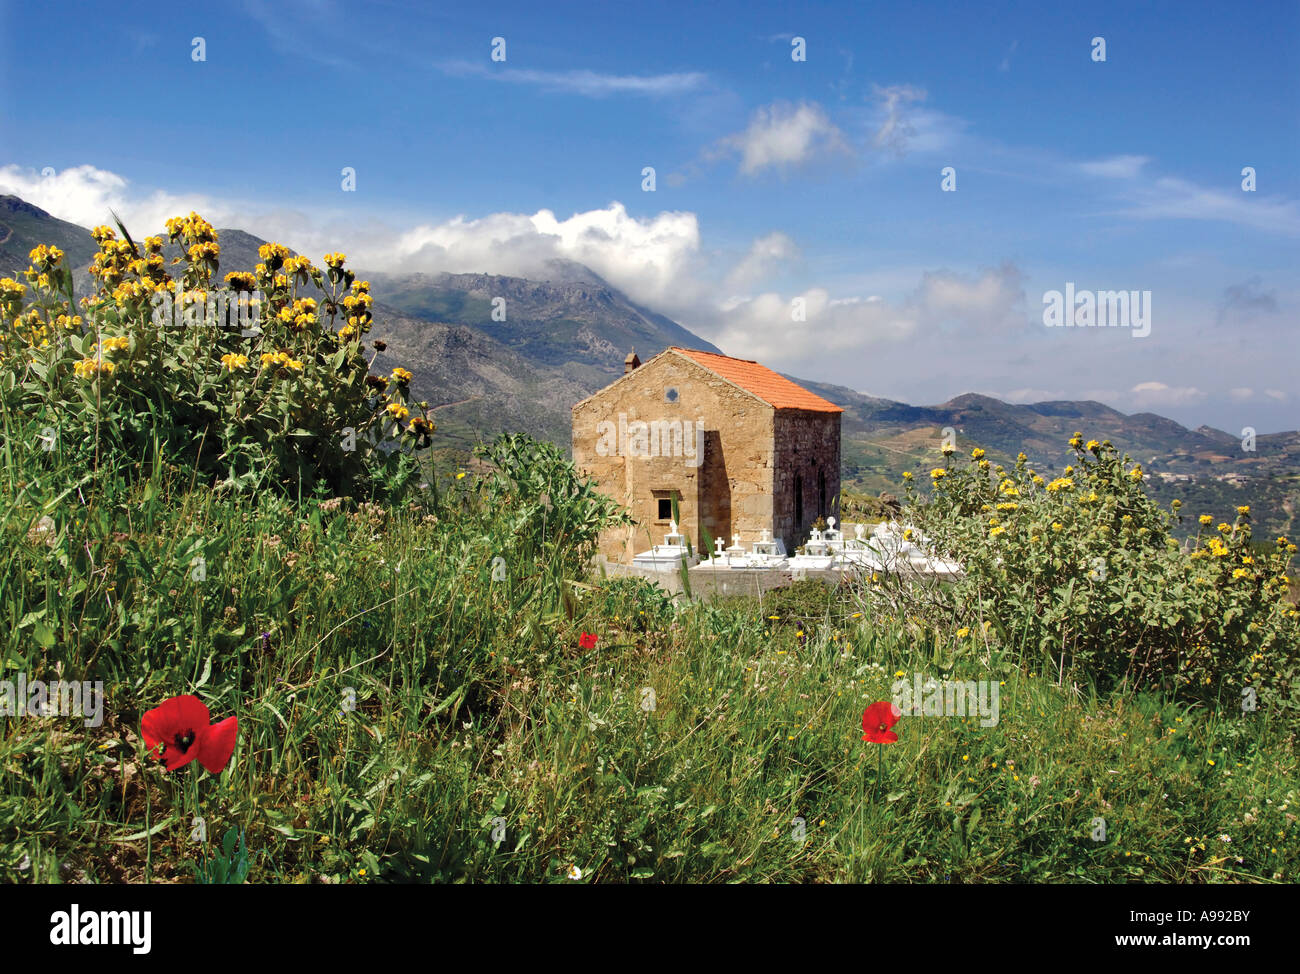 La chiesa del villaggio di Poyrennia Creta Grecia con primavera fiori selvatici Foto Stock